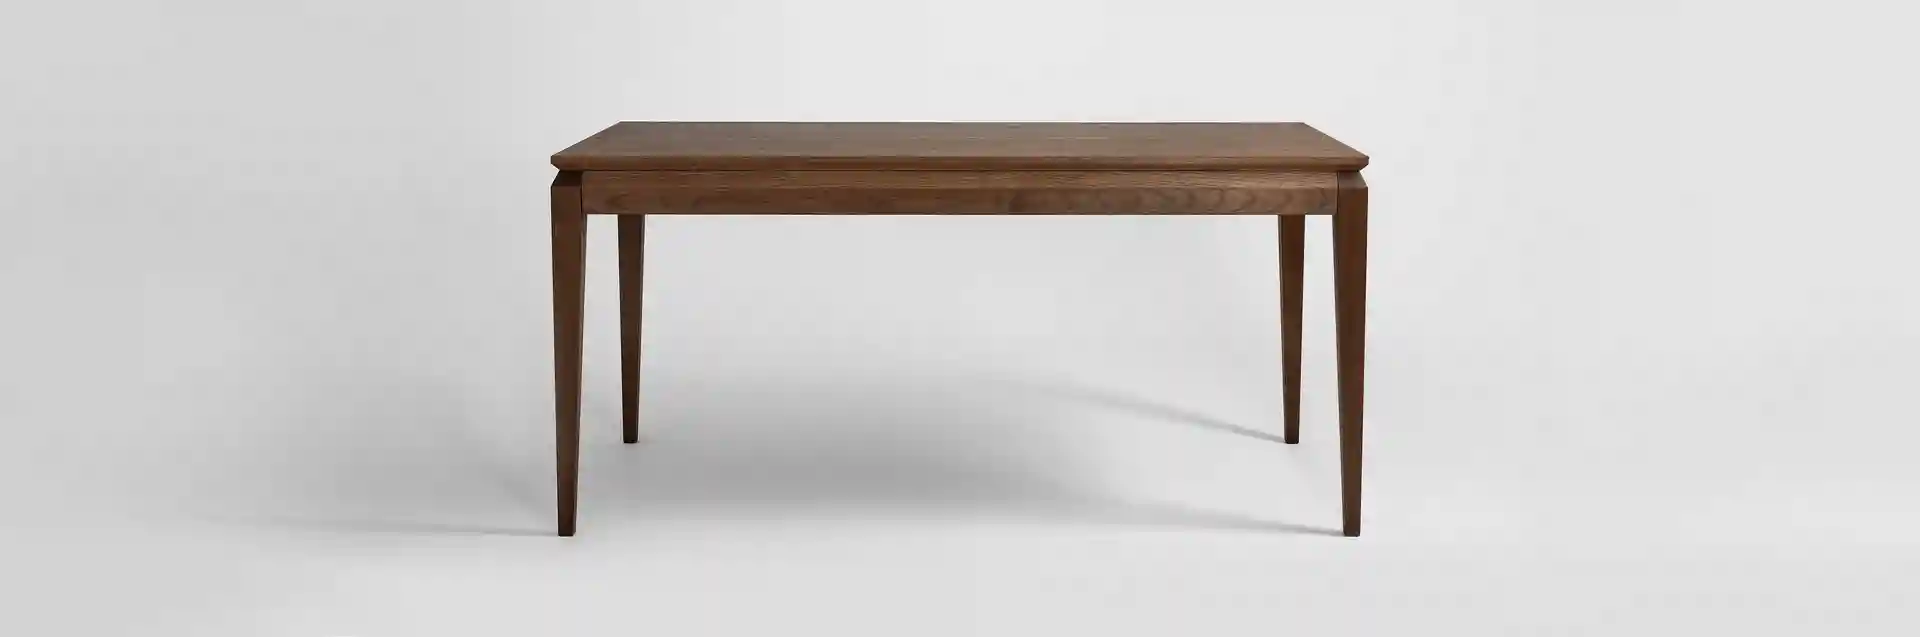 AVANGARDE drewniany stół rozkładany Miloni